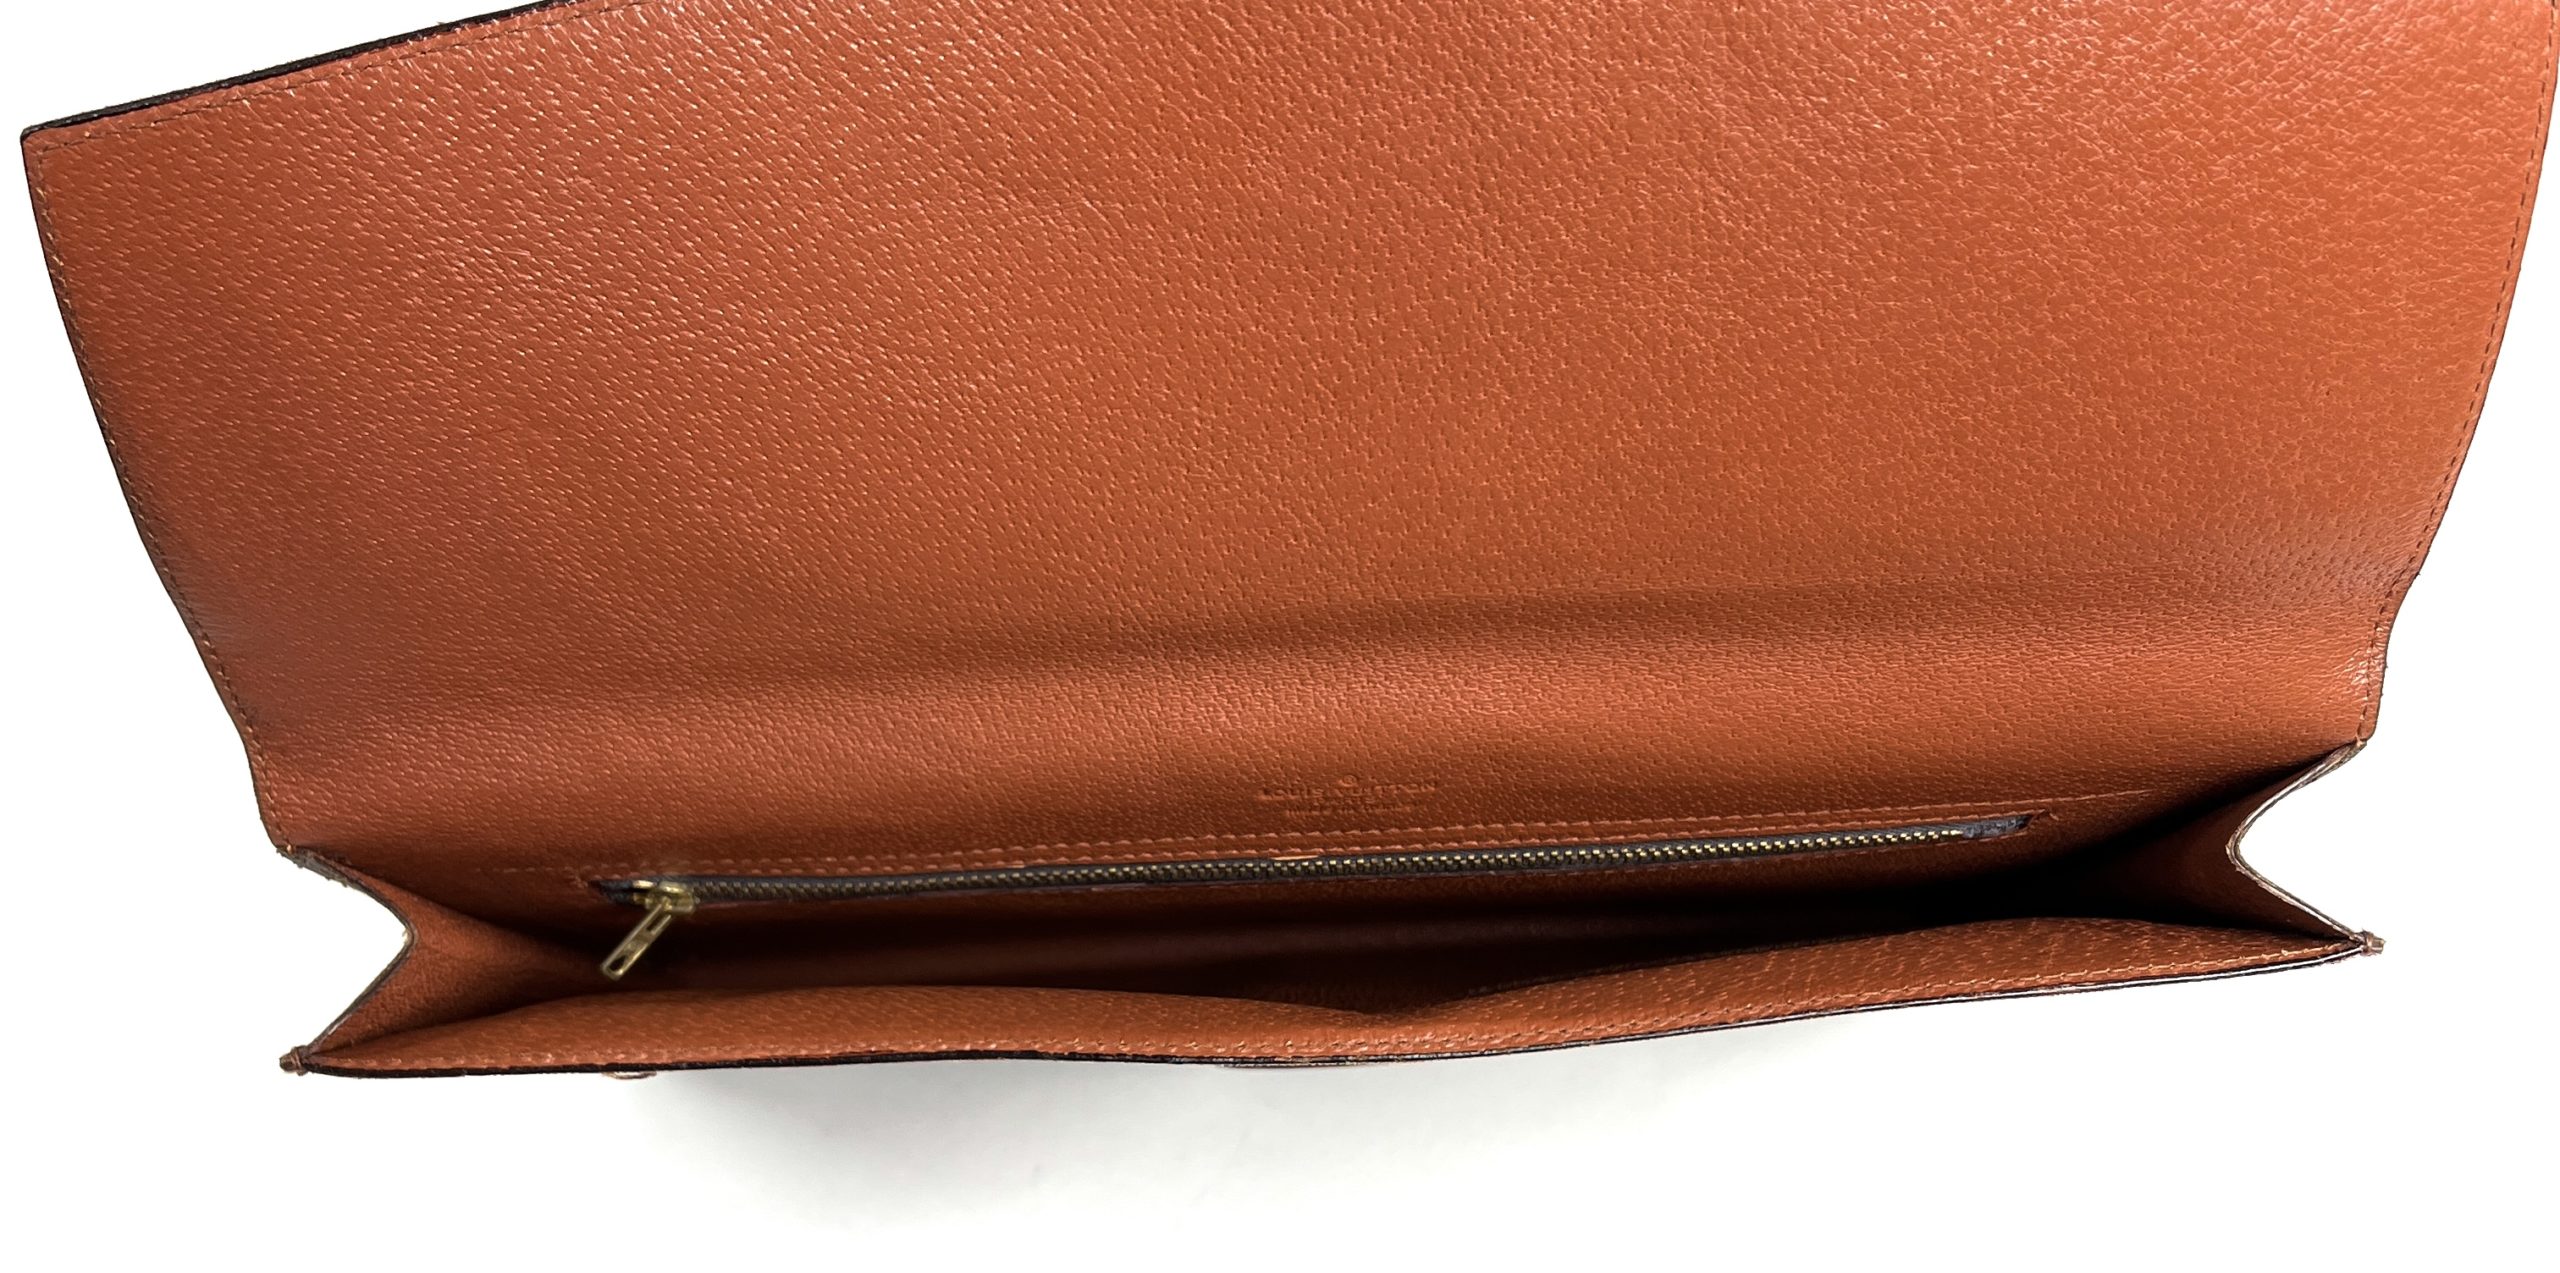 Authentic Vintage Louis Vuitton Red Epi Leather Envelope Clutch Wallet